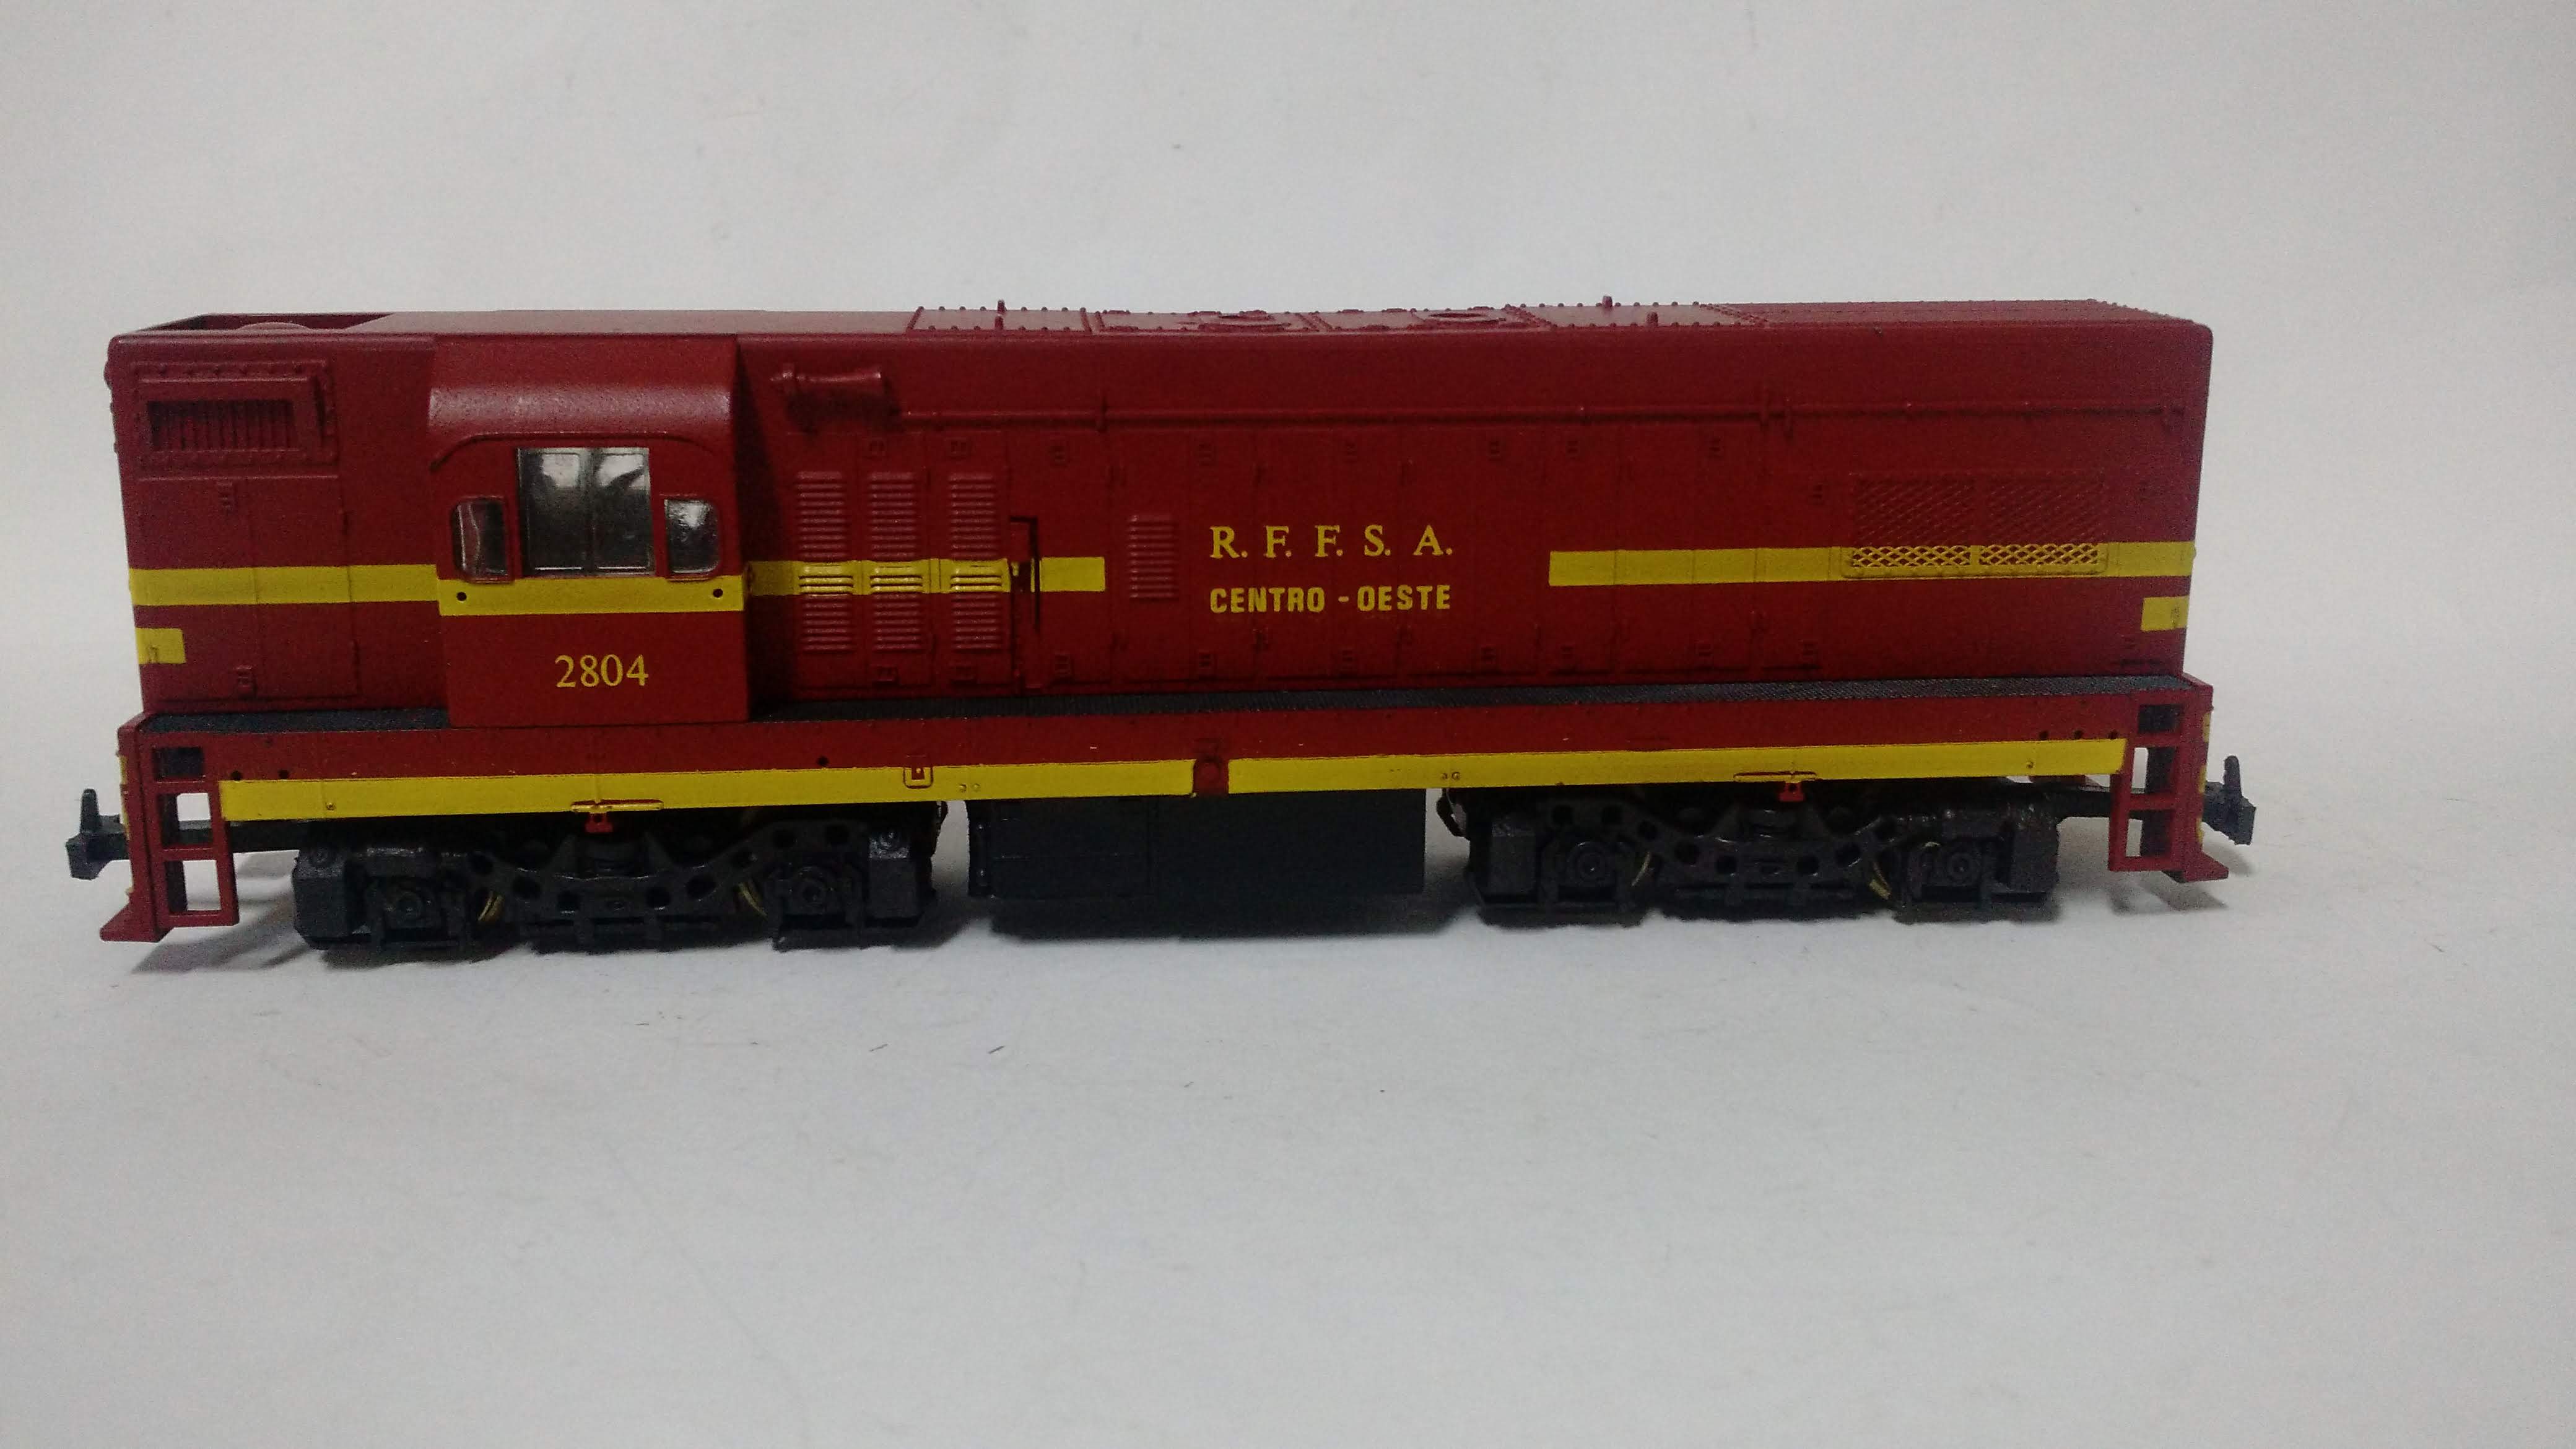 Locomotiva G-8 RFFSA # 2804 (Centro Oeste) Com motor produzido pela Frateschi